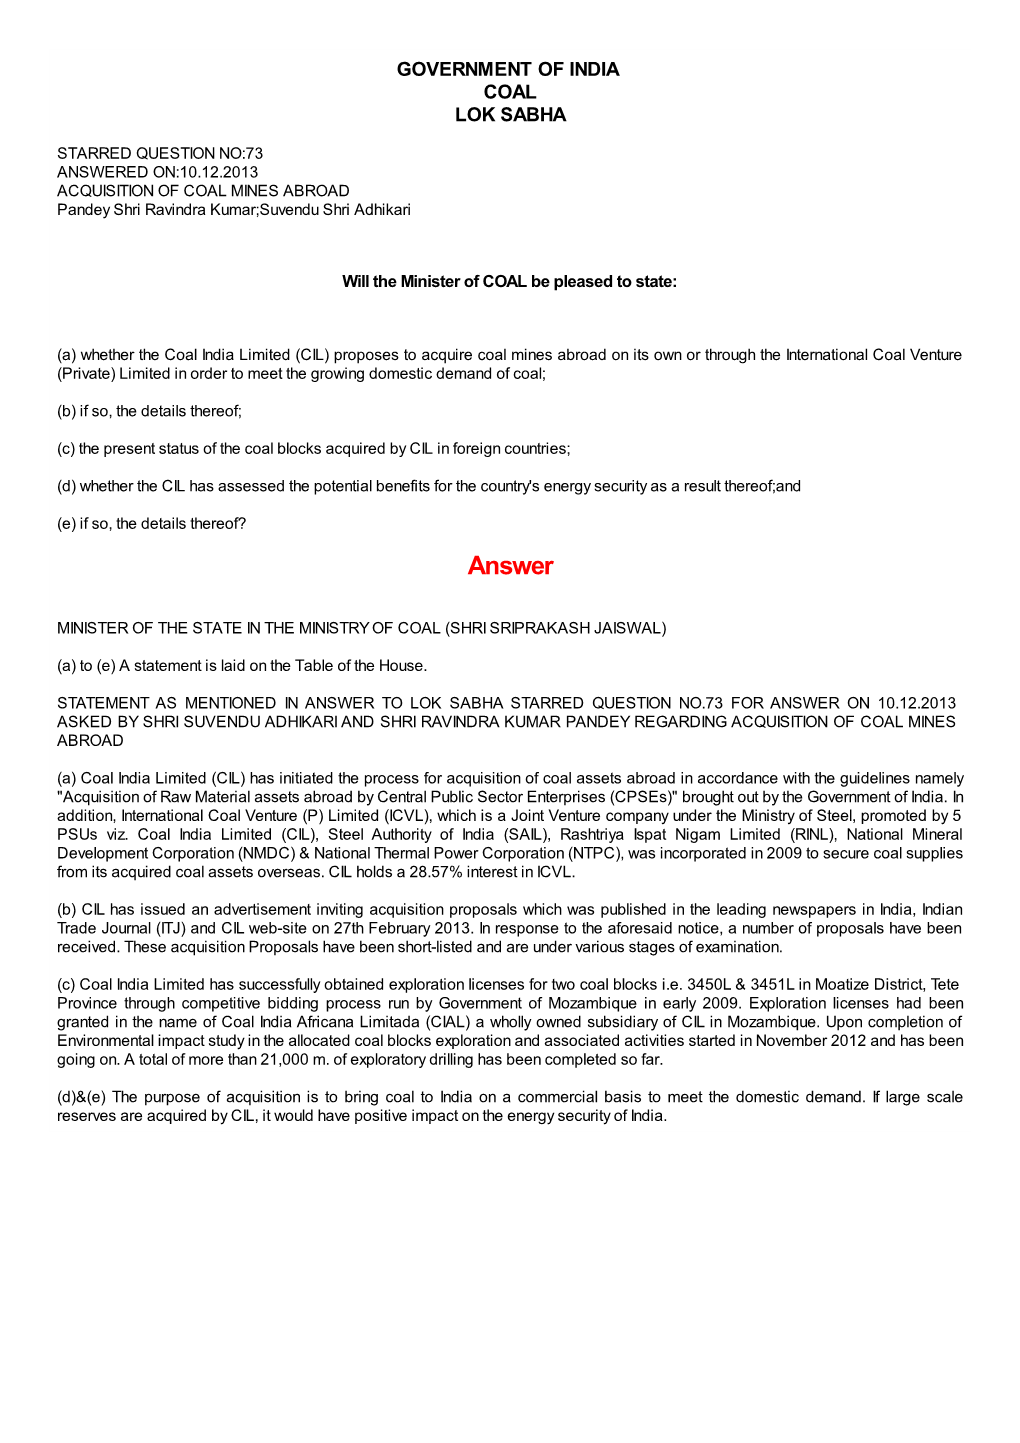 ANSWERED ON:10.12.2013 ACQUISITION of COAL MINES ABROAD Pandey Shri Ravindra Kumar;Suvendu Shri Adhikari